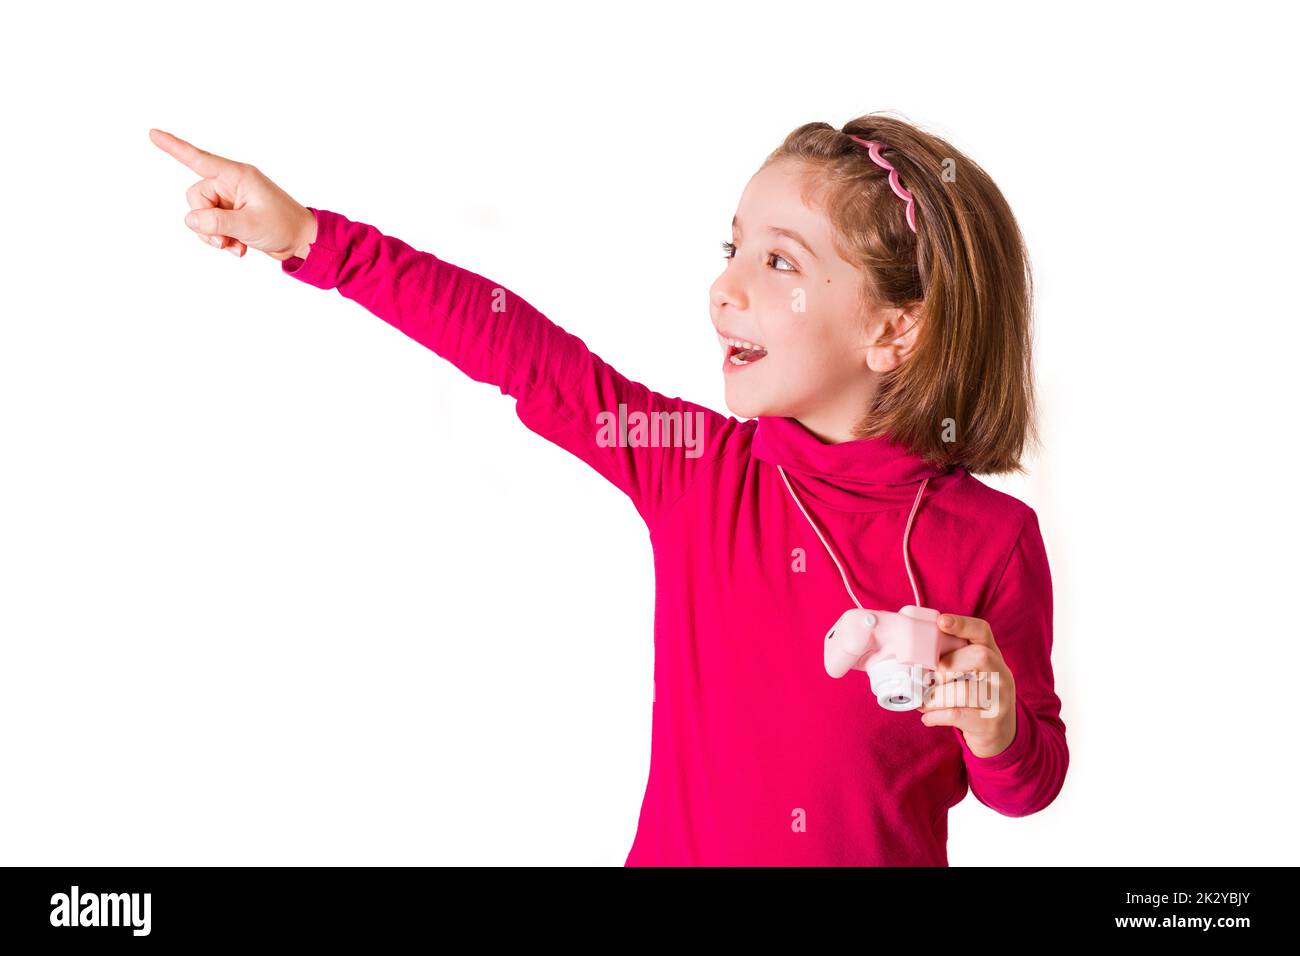 La niña con sudadera roja indica con su dedo dónde fotografiar con su  cámara de juguete. Foto de alta calidad aislada sobre blanco Fotografía de  stock - Alamy